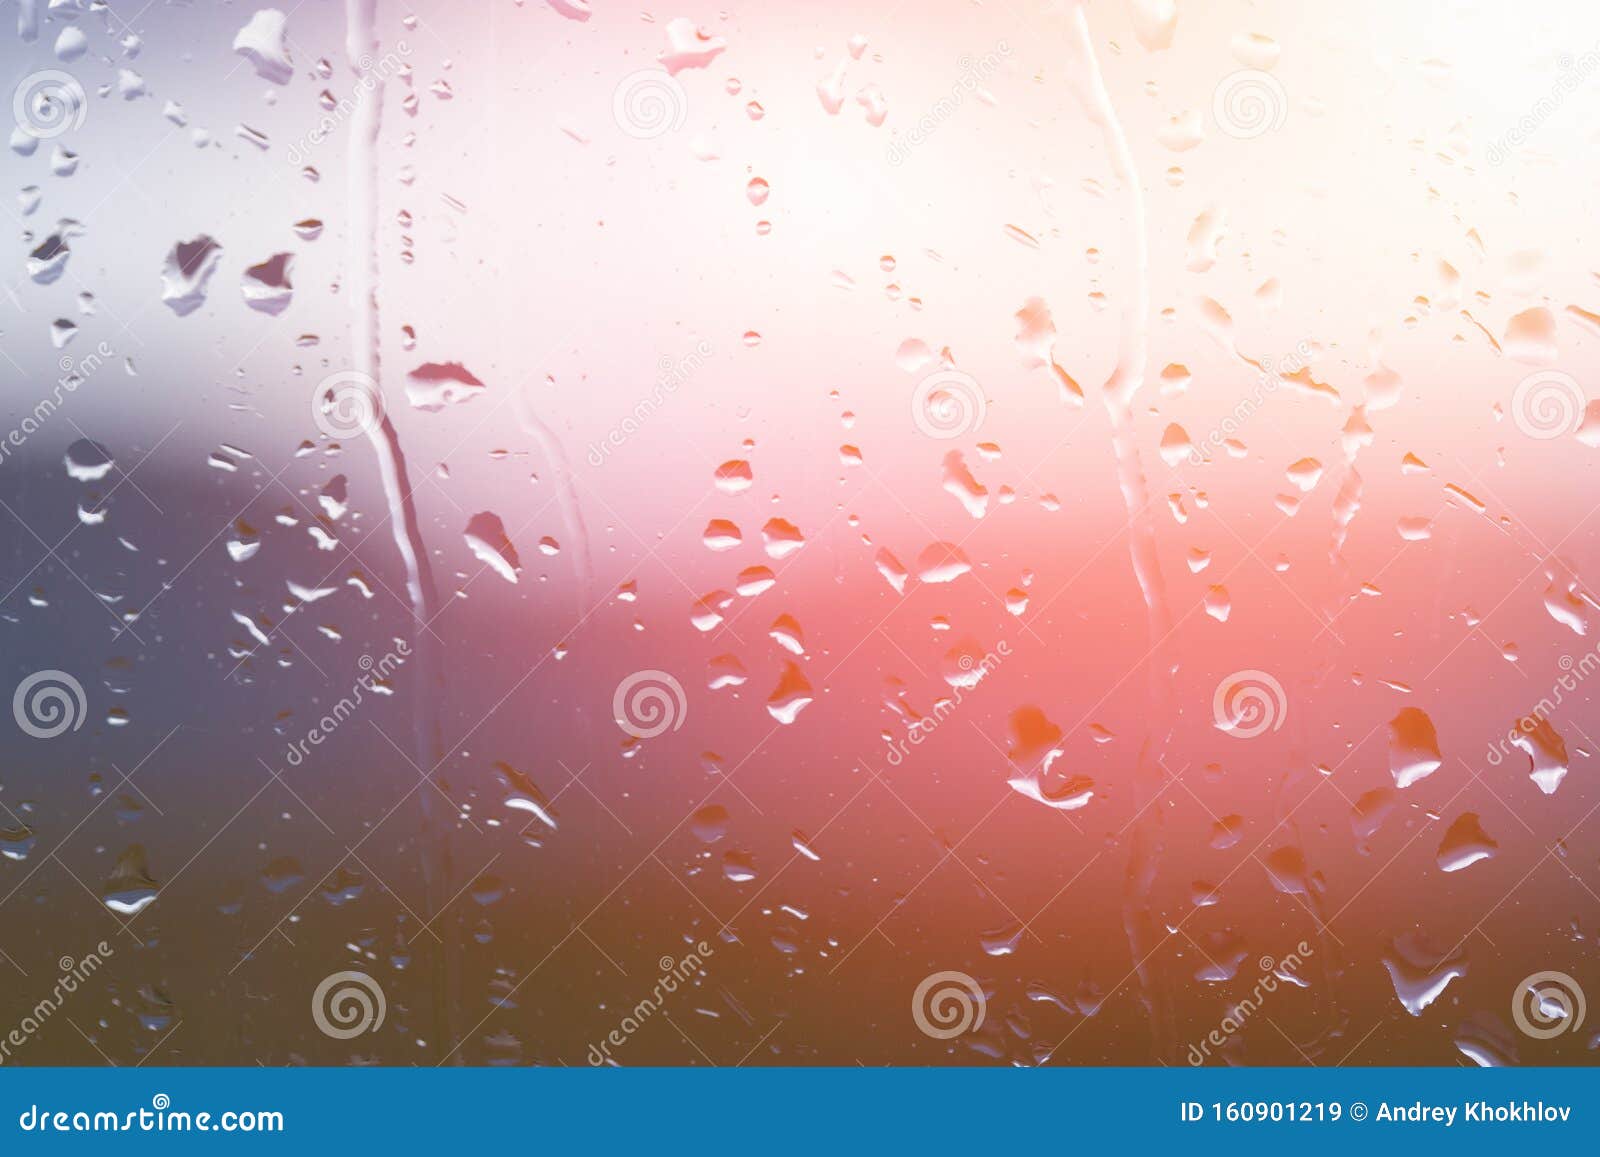 雨后窗玻璃上的水滴 背景上夕阳明显模糊田园诗般的宁静自然壁纸库存图片 图片包括有水色 模式